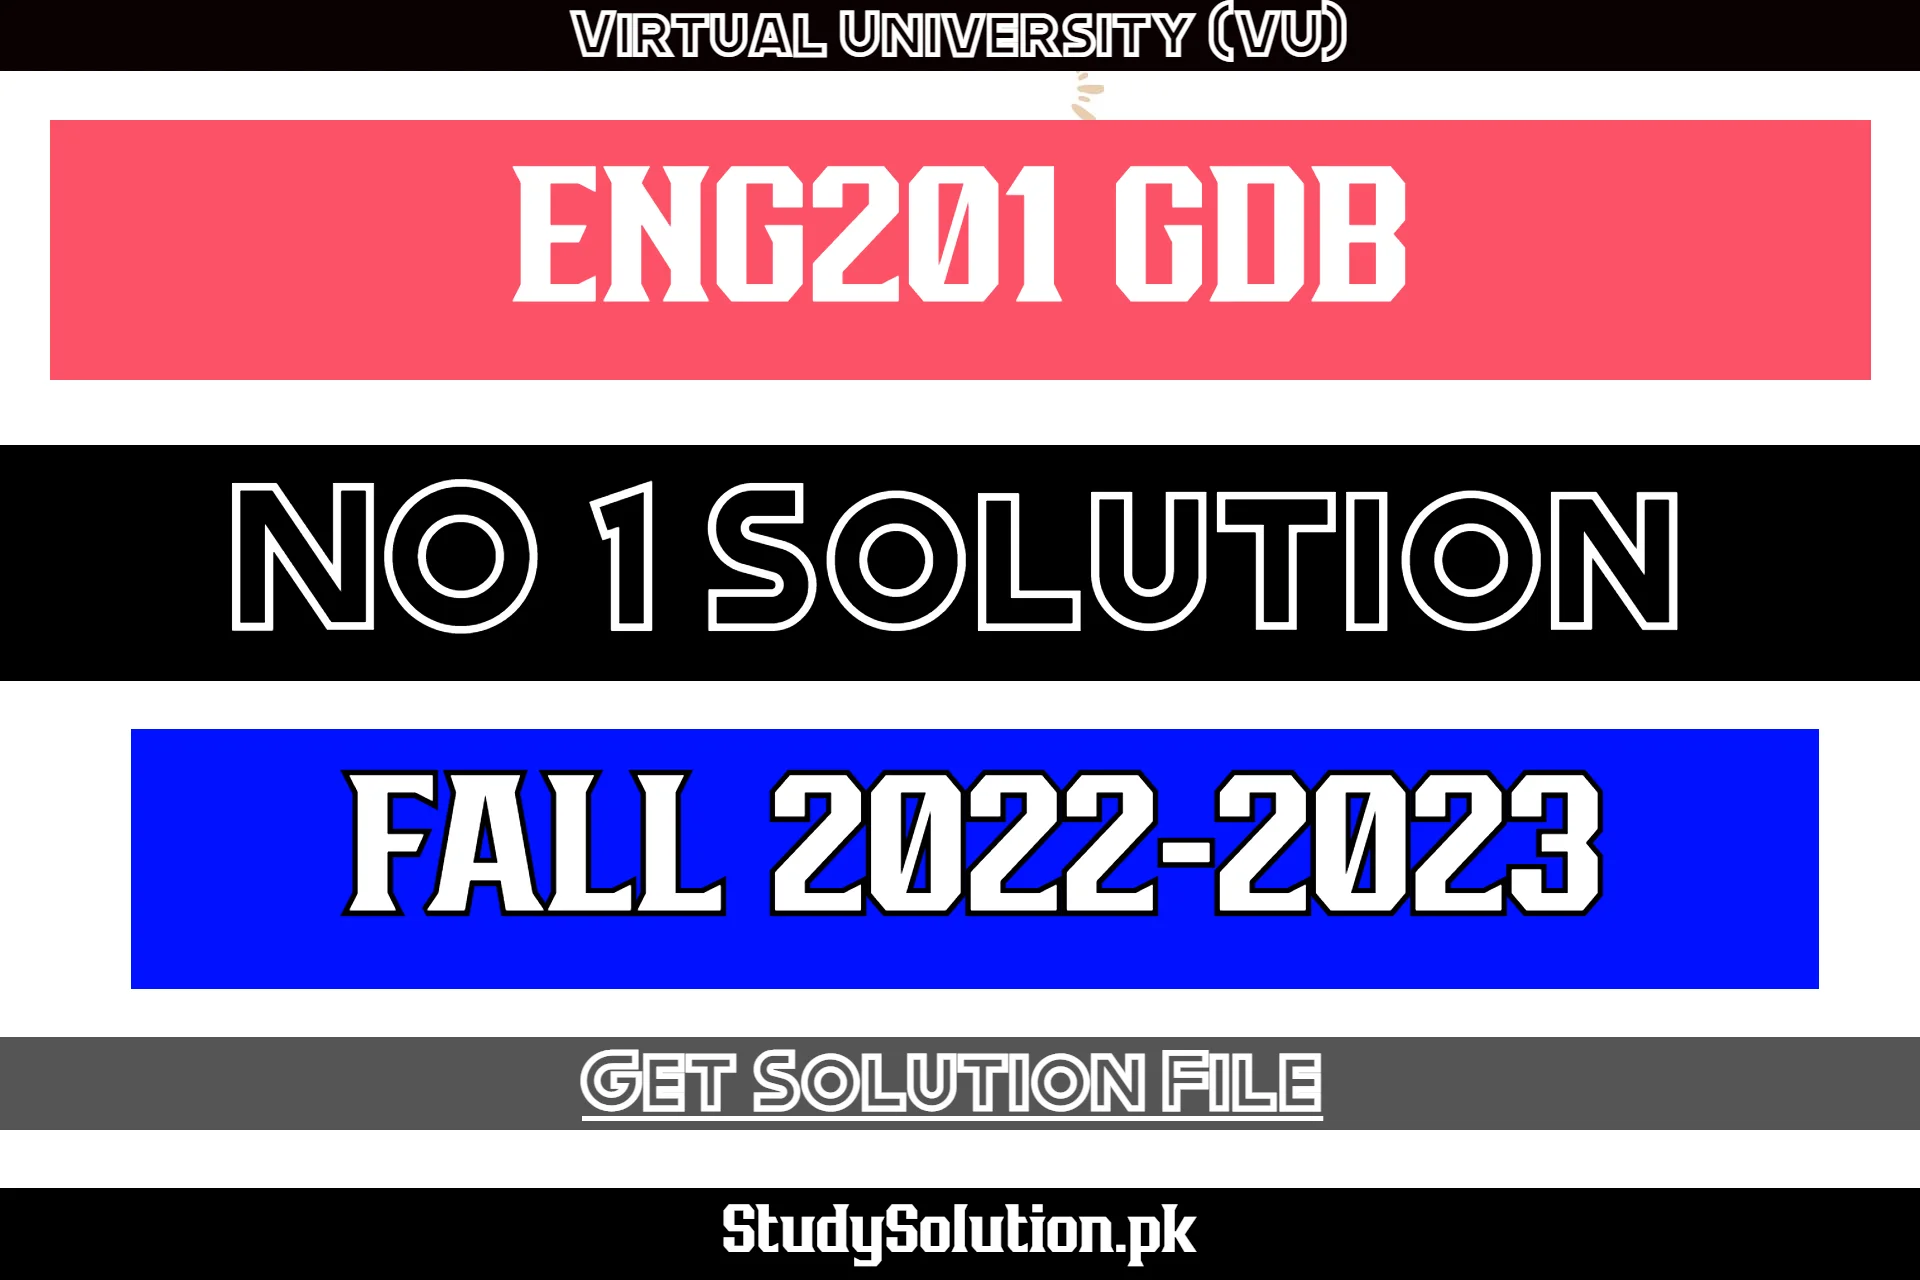 ENG201 GDB No 1 Solution Fall 2022